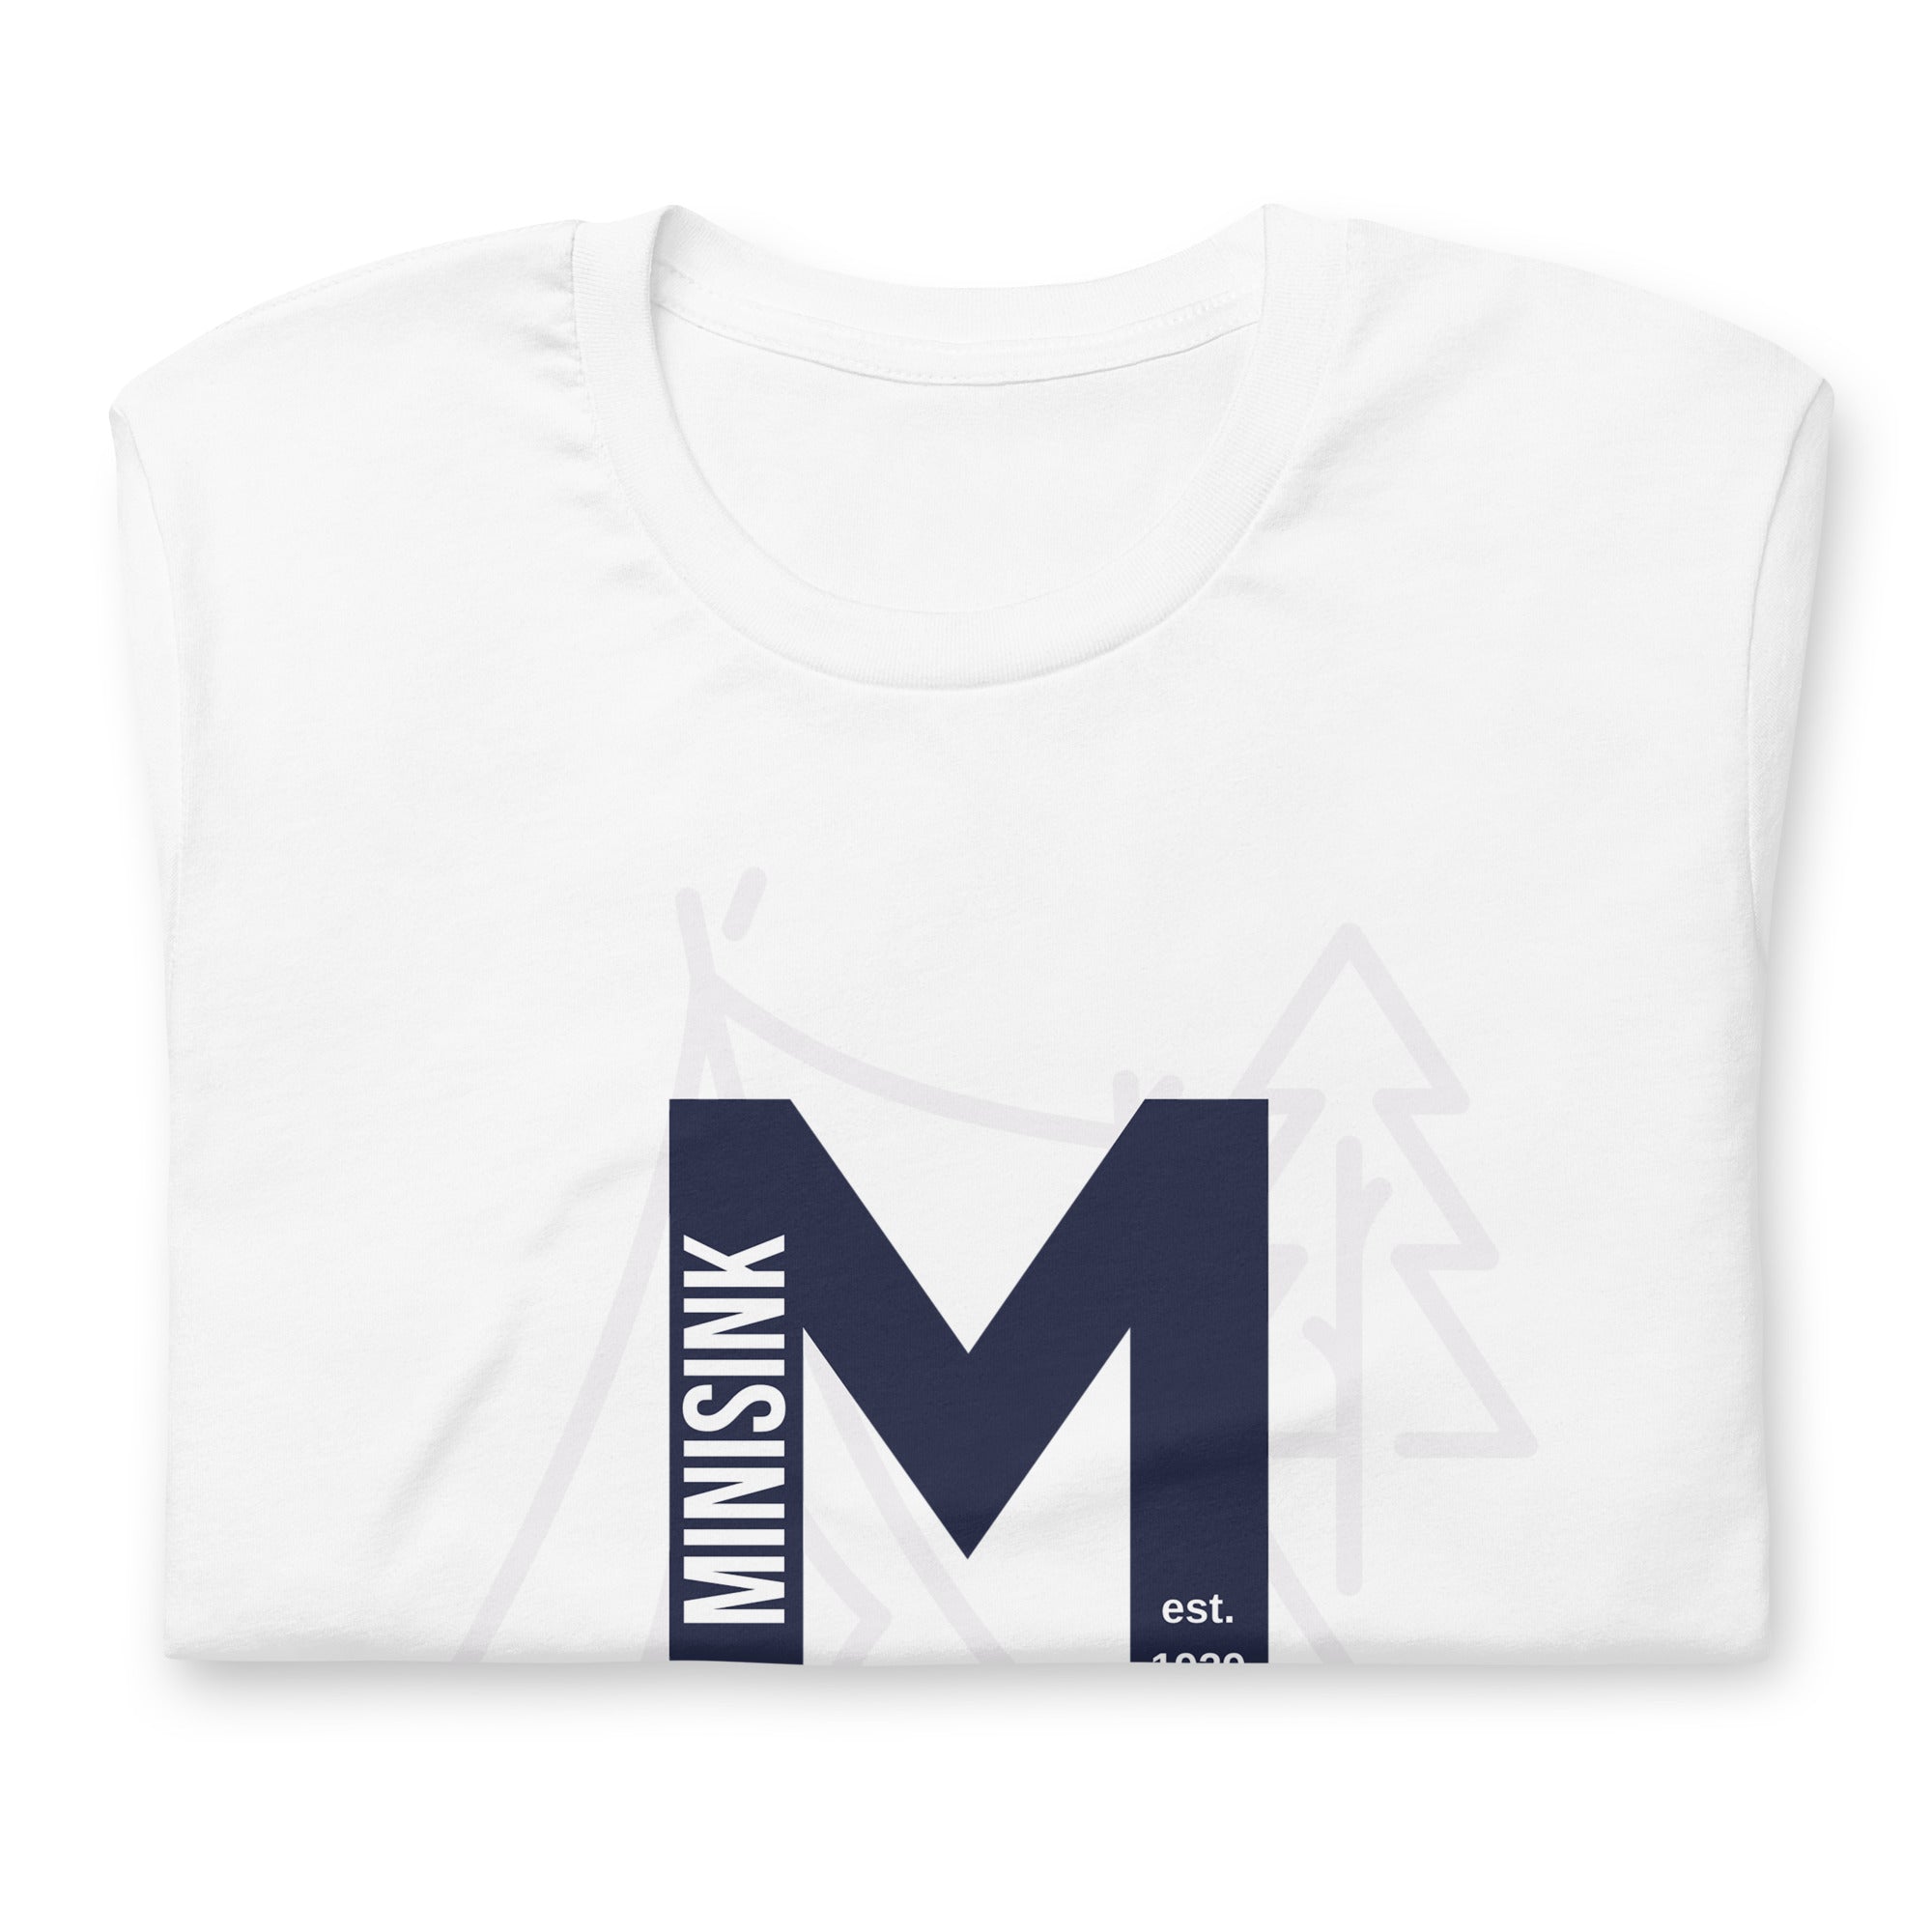 Minisink Lives Forever White w/ Blue M Unisex t-shirt